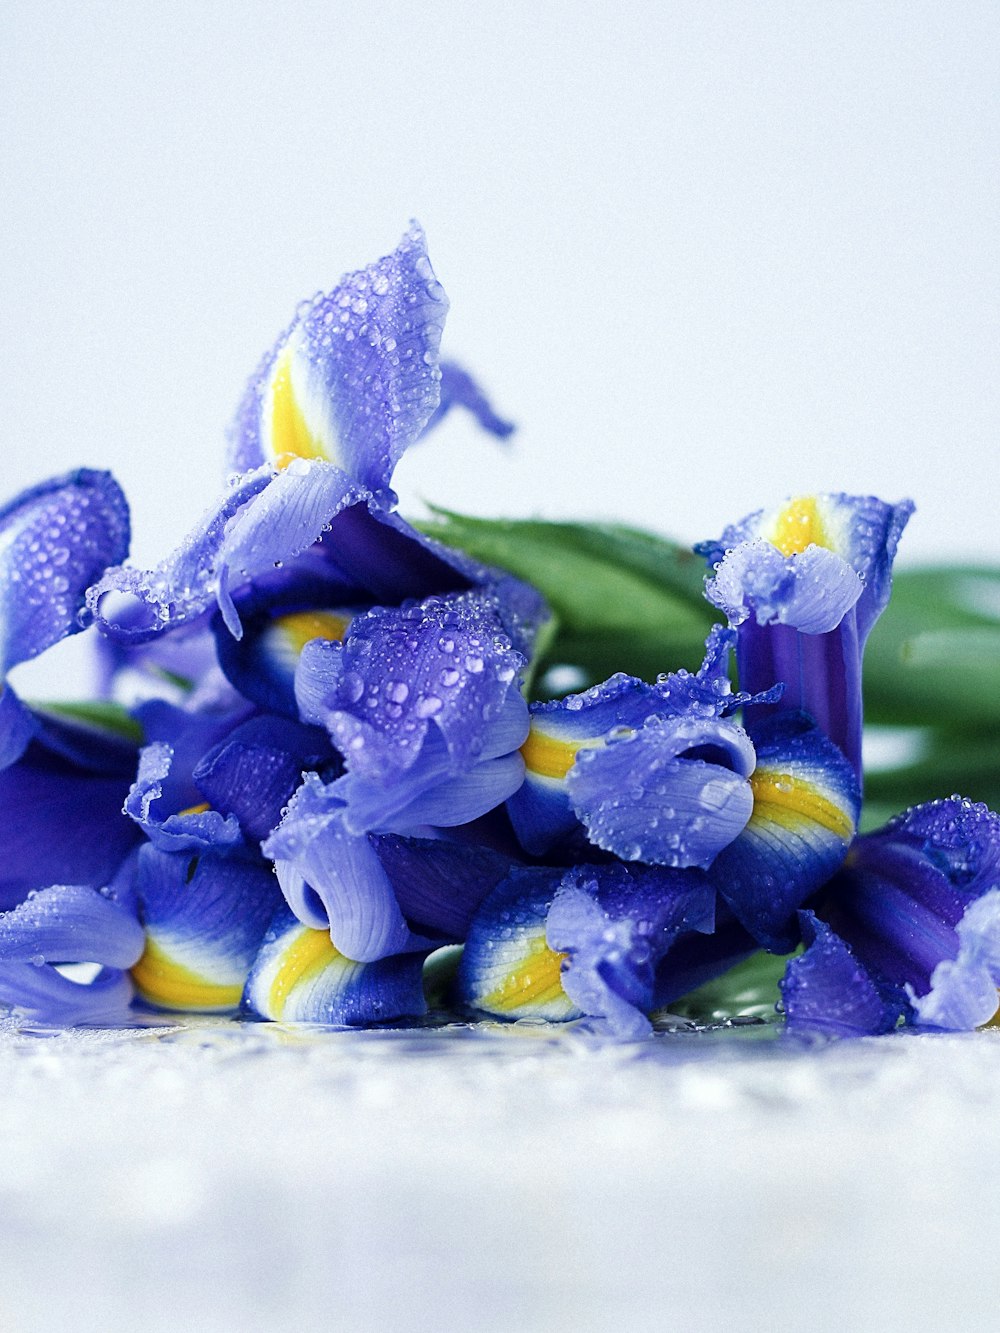 purple-petaled flowers with water dews